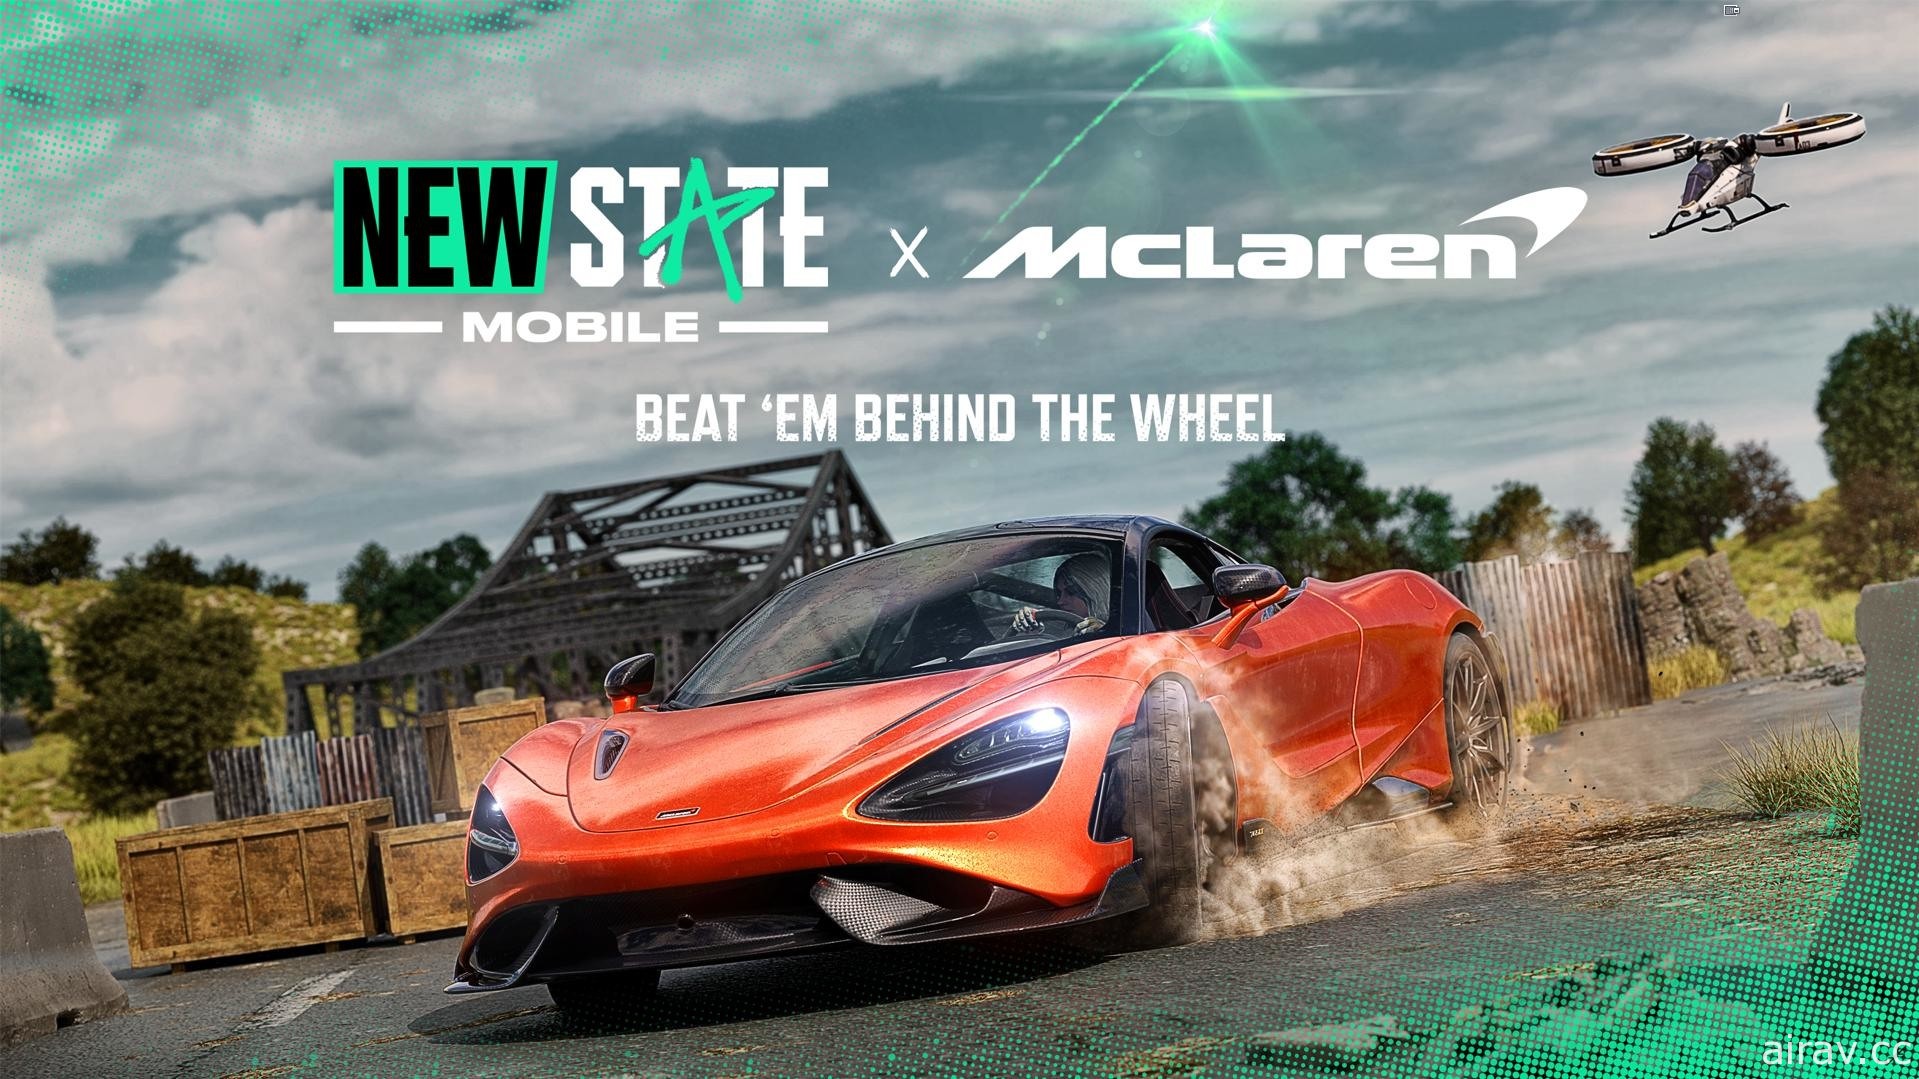 《未来之役 MOBILE》展开 Season 2 赛季 同步推出 McLaren Automotive 联名活动